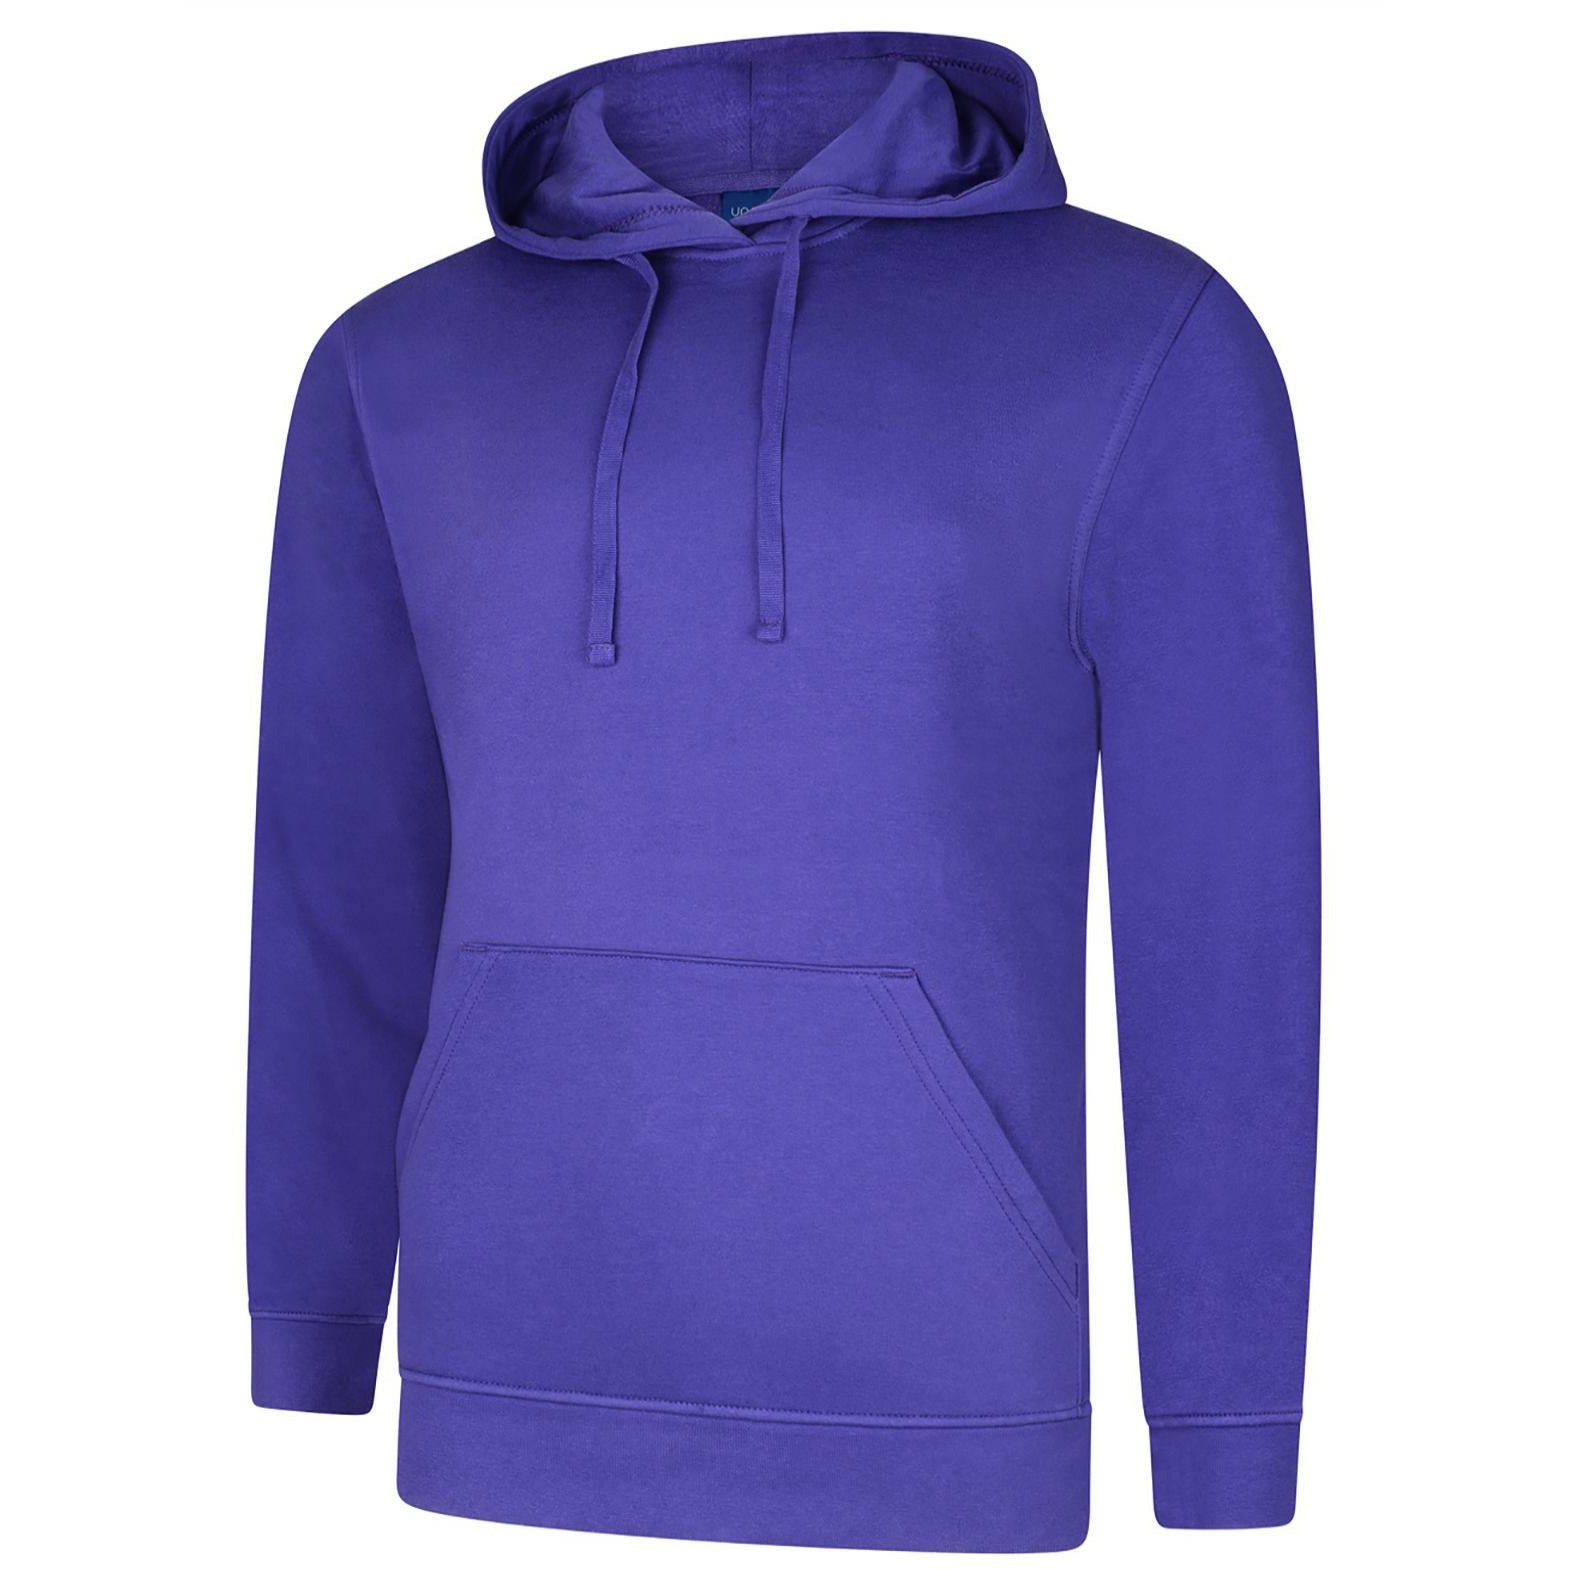 Deluxe Hooded Sweatshirt (L - 2XL) Purple